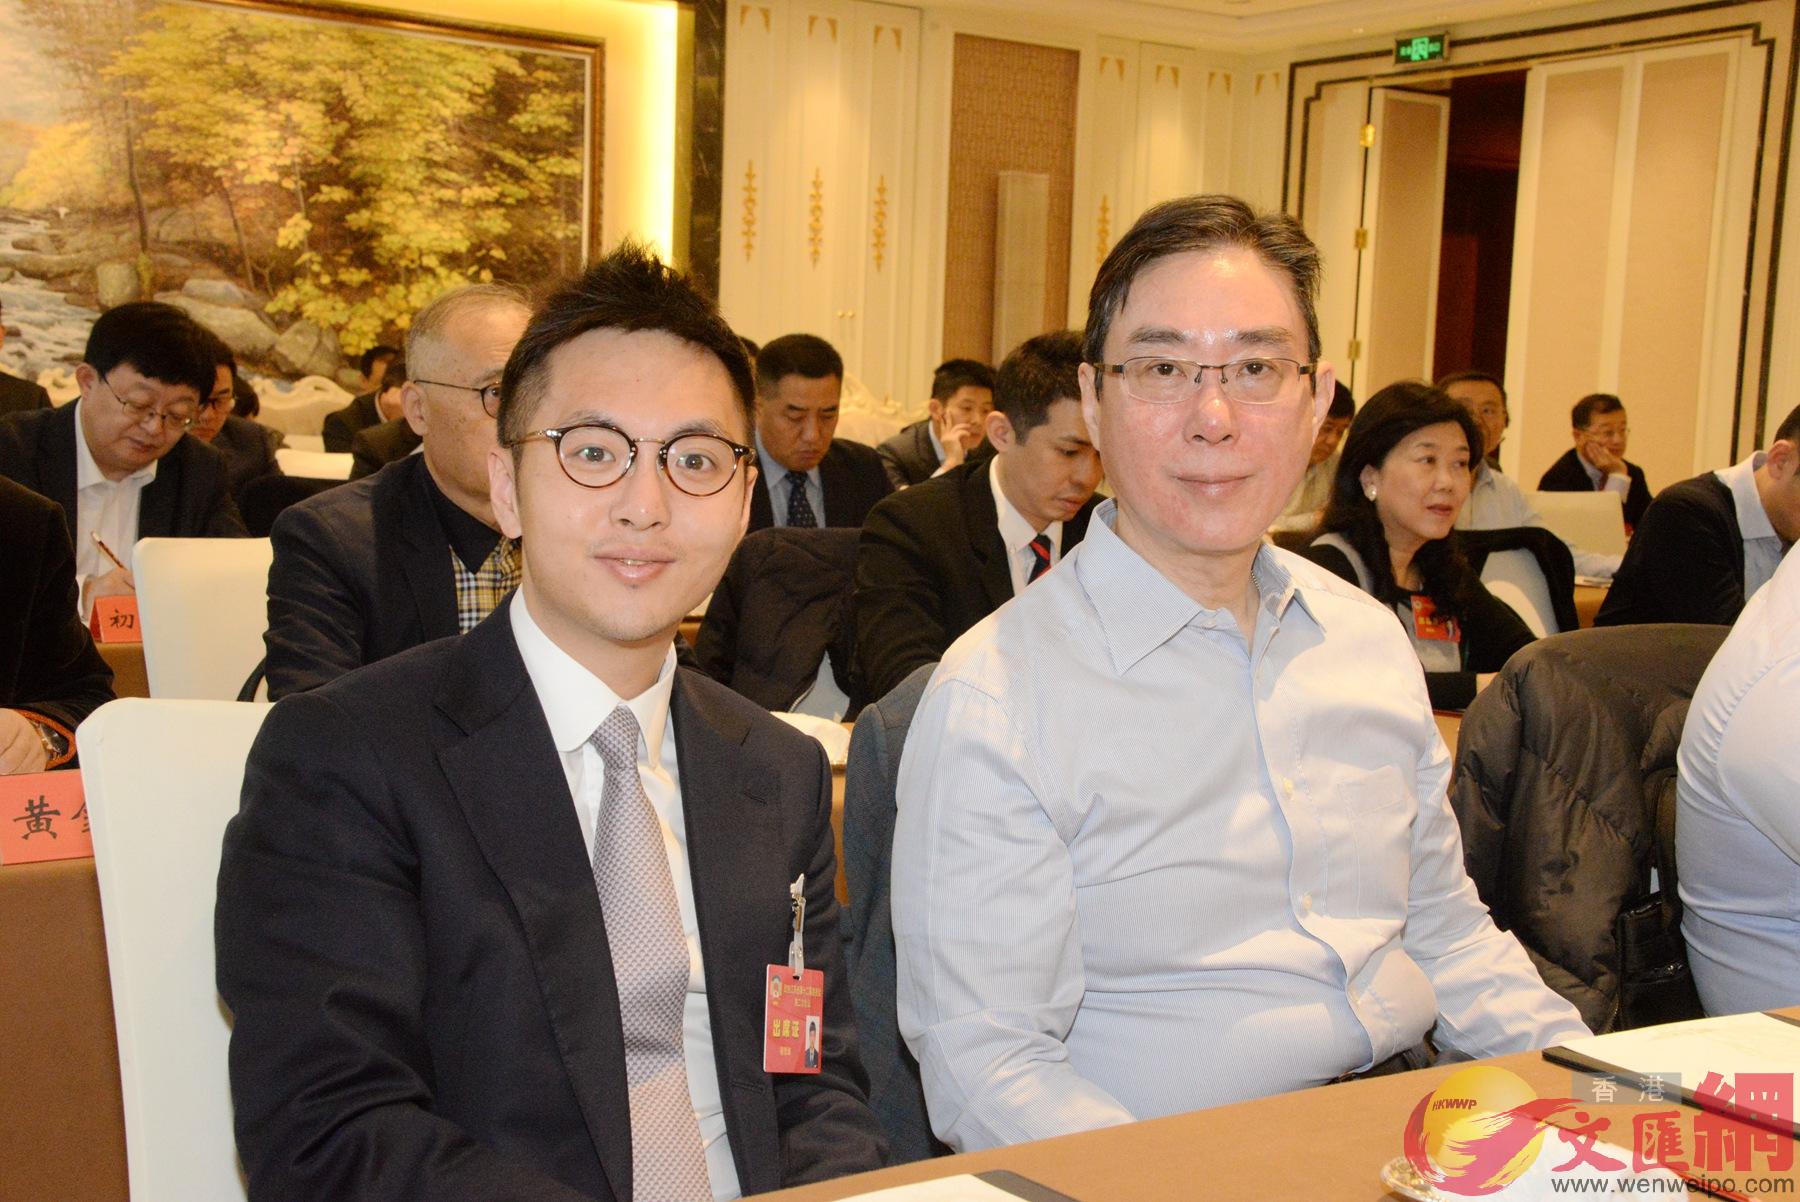 圖為江蘇省政協港區委員容思瀚(左)和唐慶年在參加會議C(賀鵬飛攝)